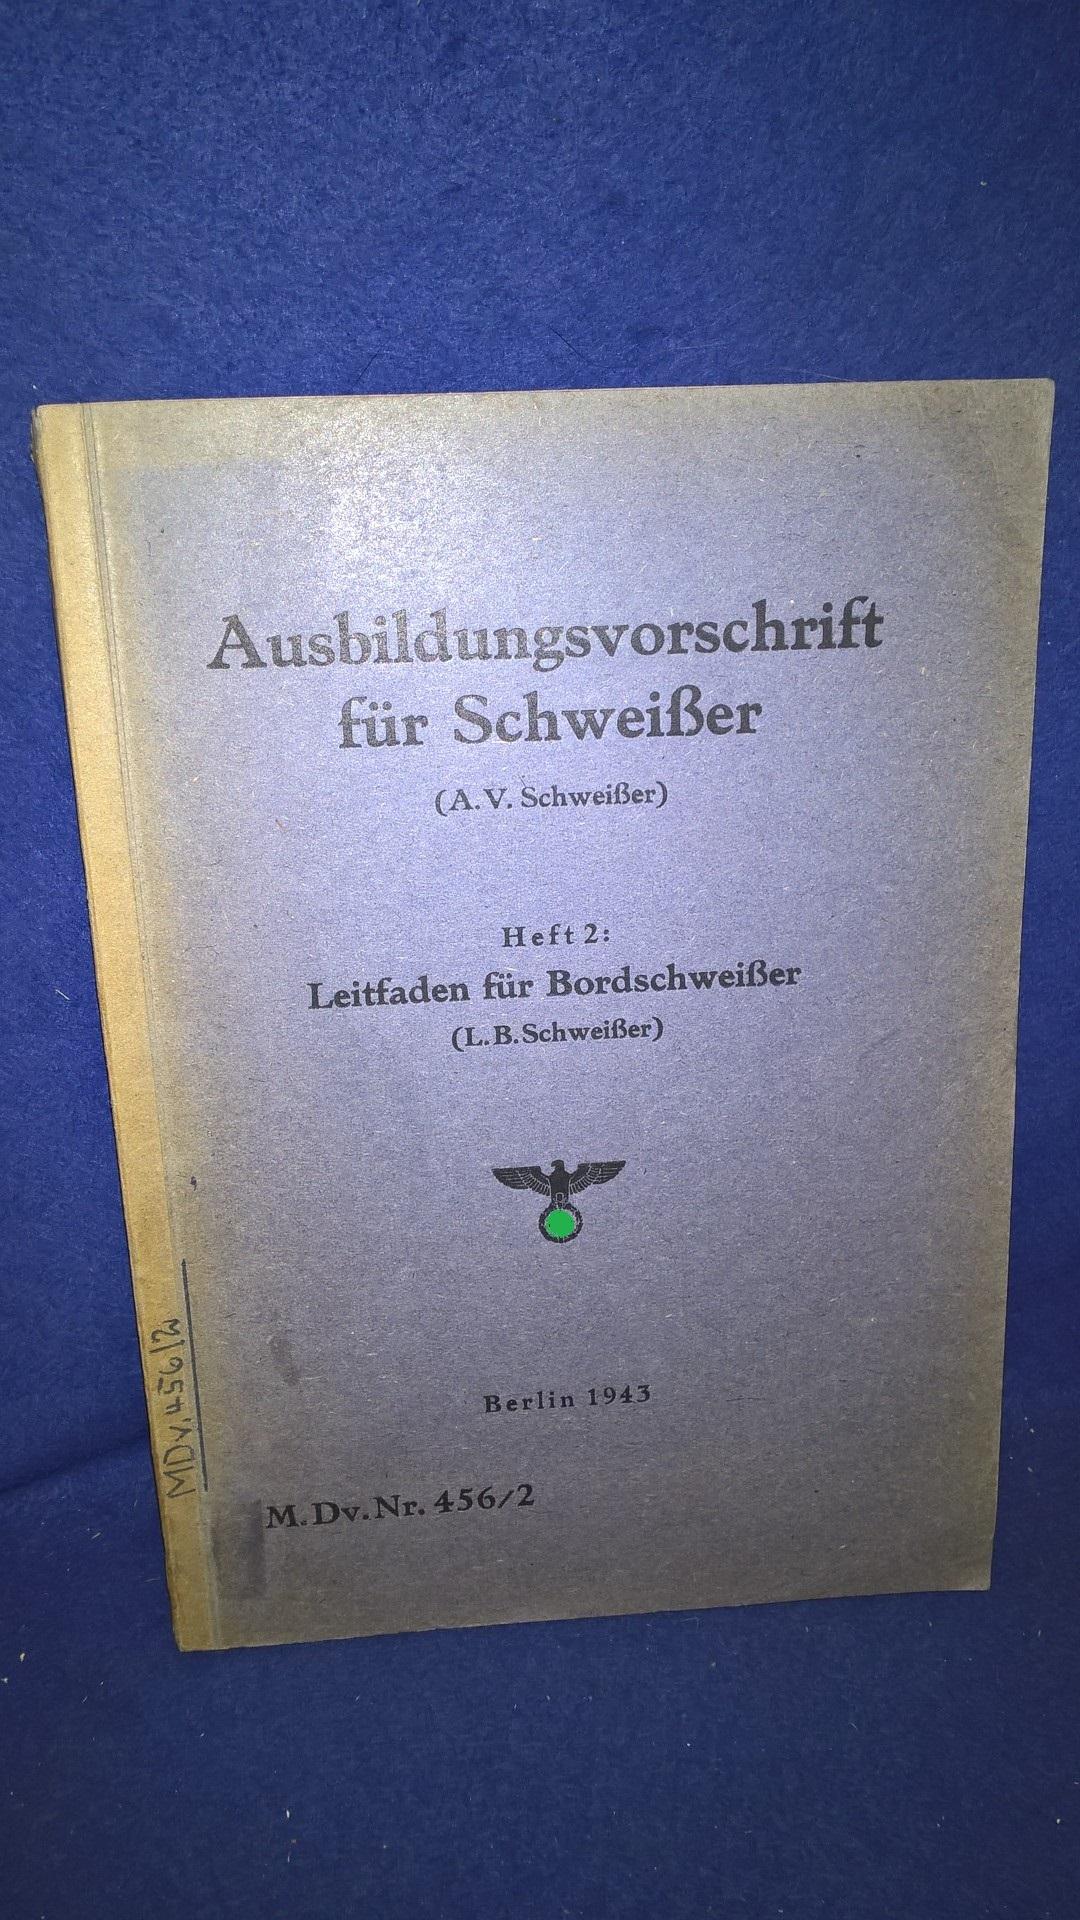 M.Dv. Nr.456/2: Ausbildungsvorschrift für Schweißer. Heft 2: Leitfaden für Bordschweißer. Von 1943!